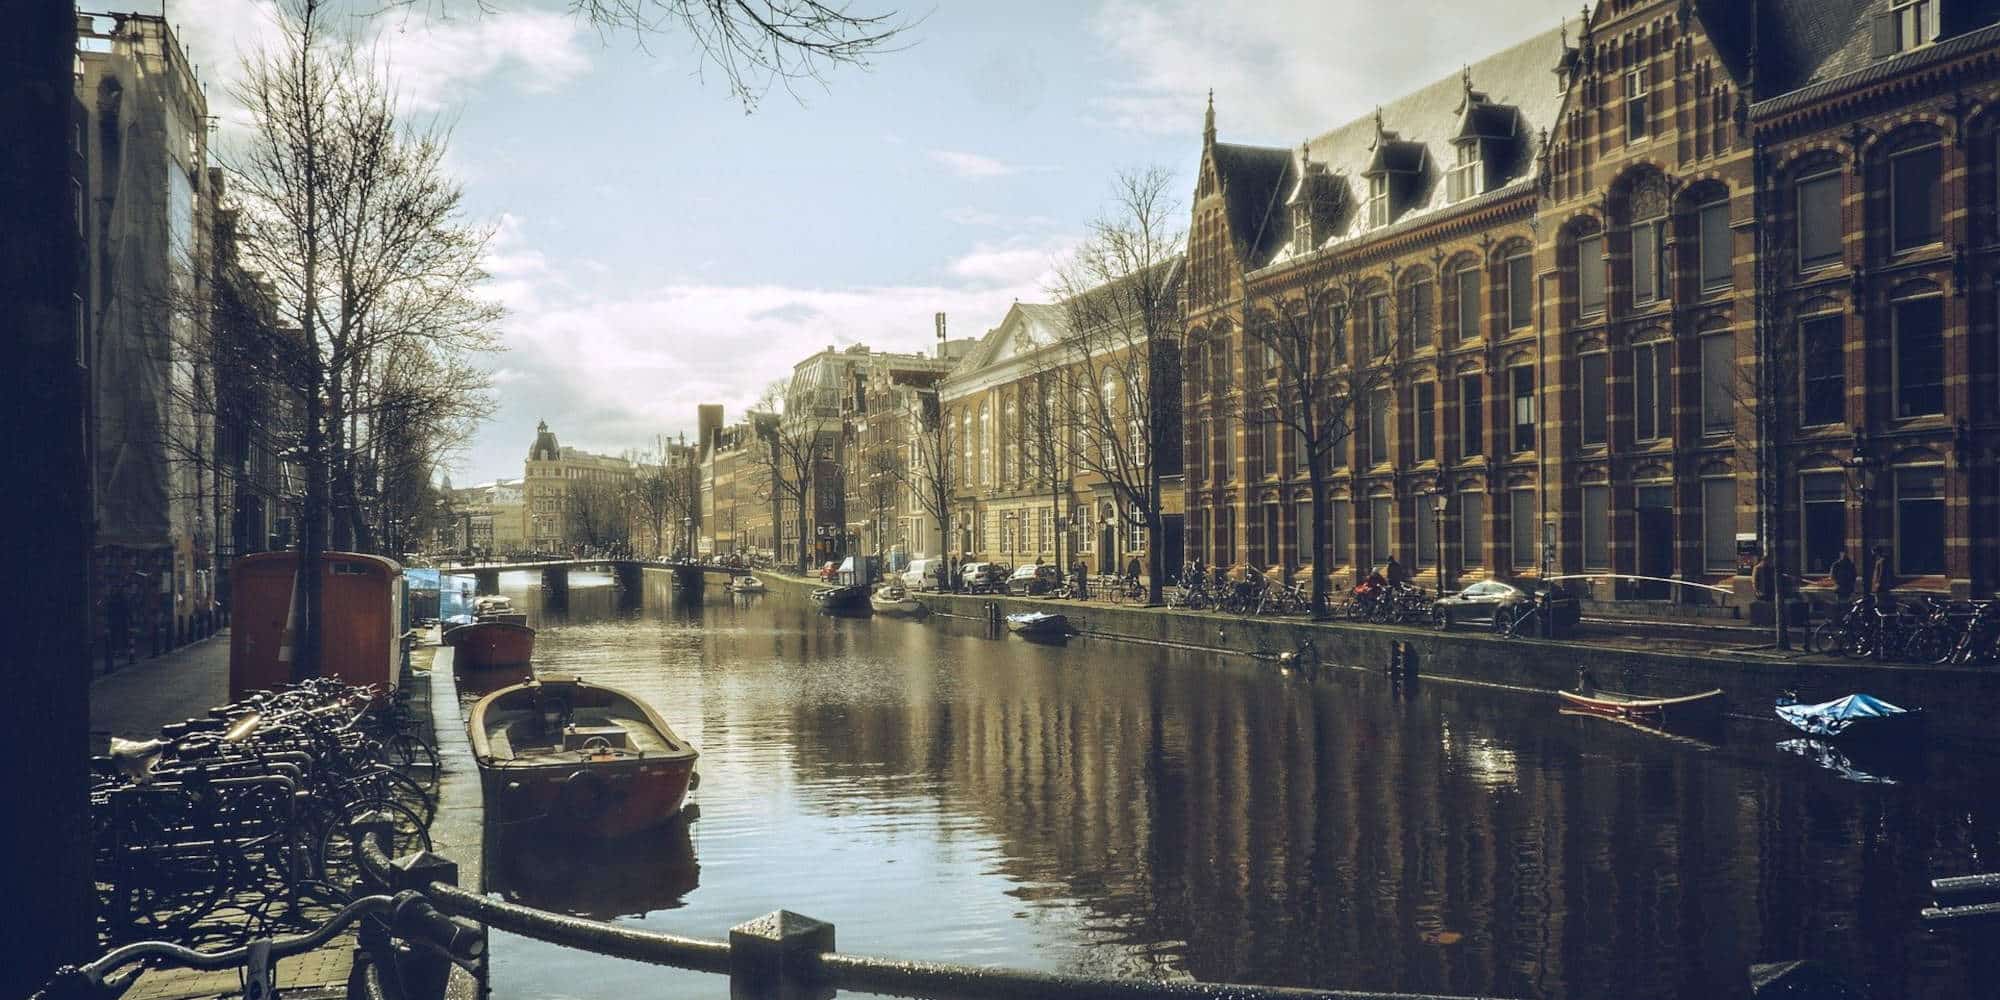 Το όμορφο κανάλι στο Άμστερνταμ, στην Ολλανδία